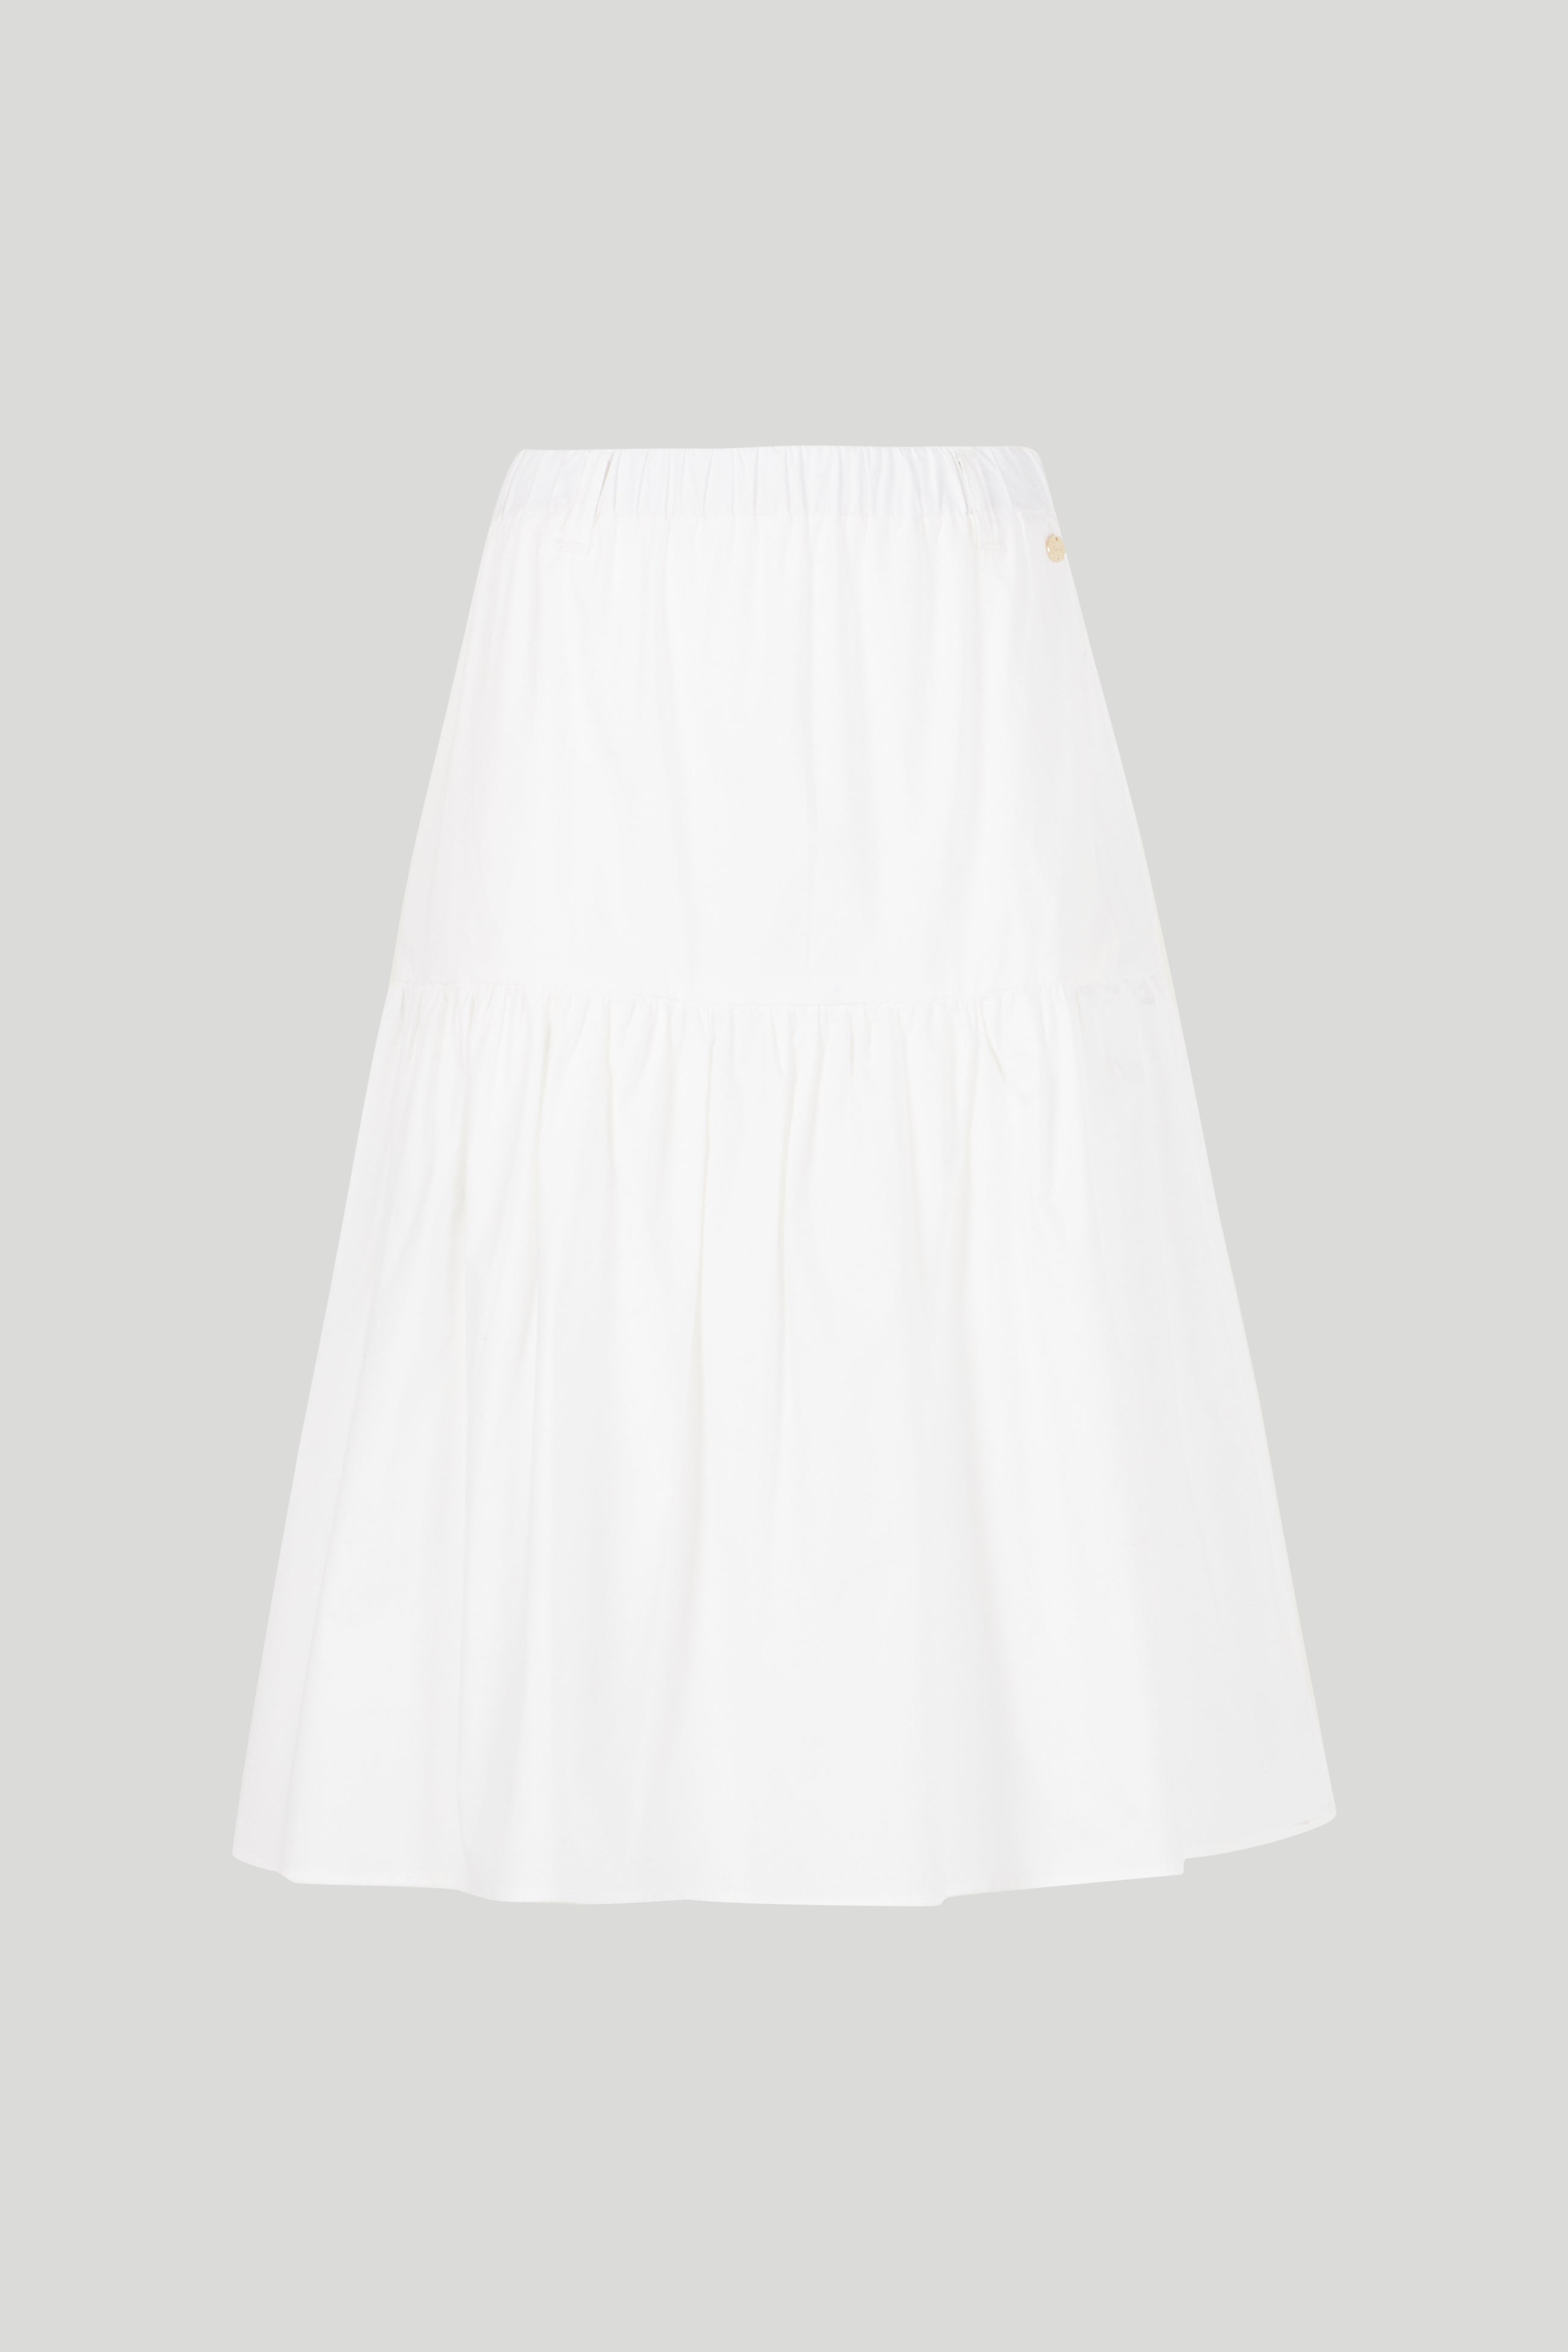 LIU JO White Midi Skirt